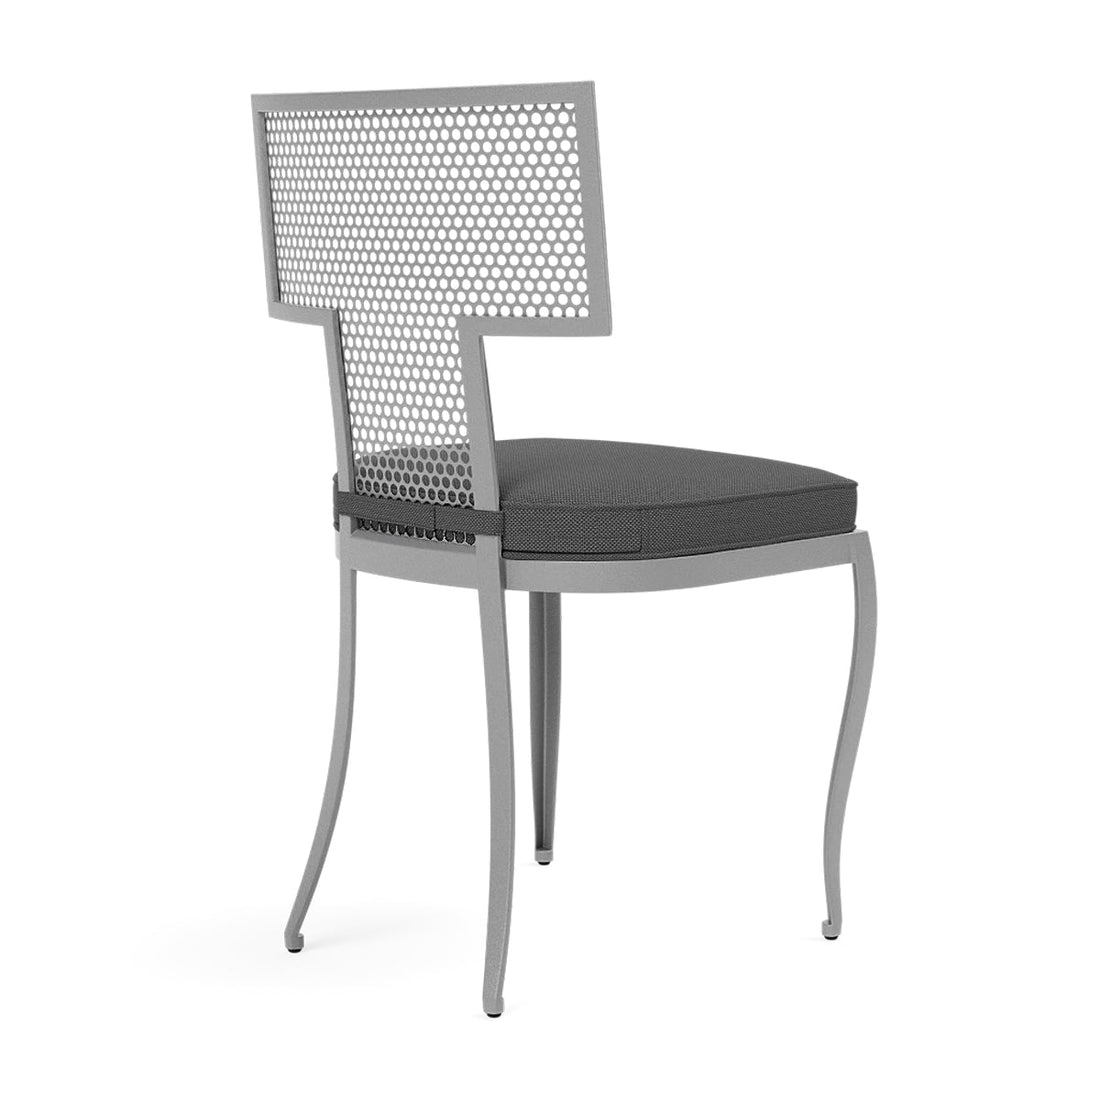 Made Goods Hadley Metal Outdoor Dining Chair in Alsek Fabric